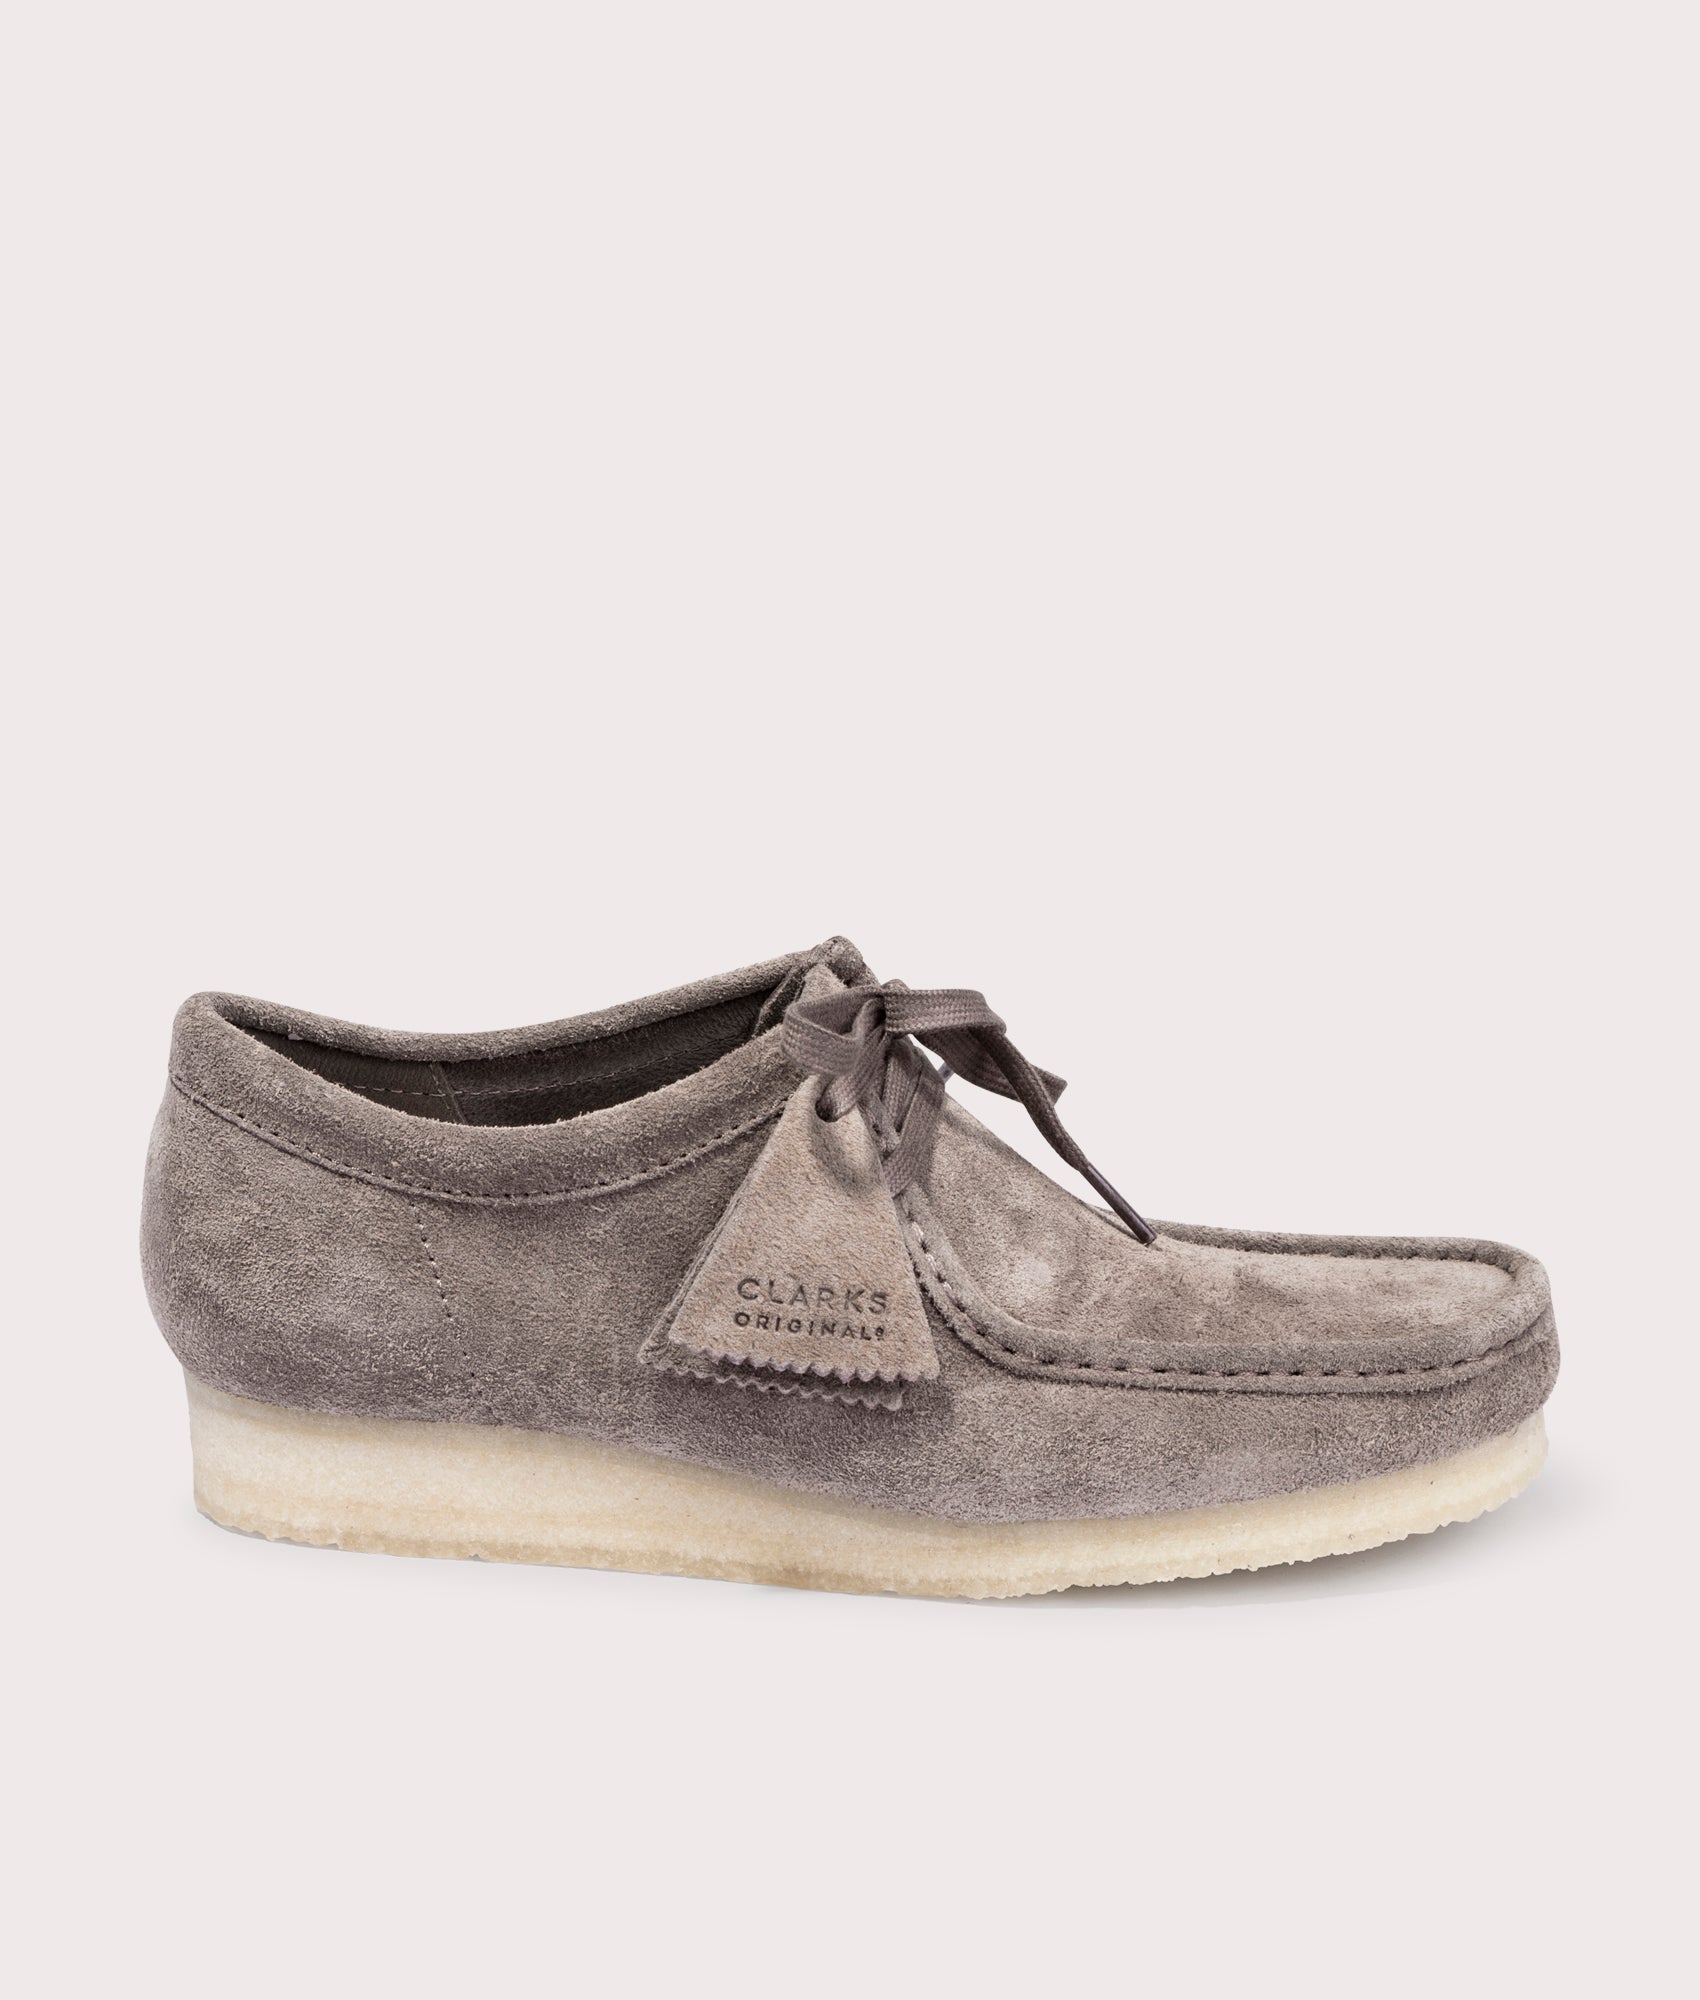 Wallabee Shoes Dark Grey Suede | Clarks Originals | EQVVS